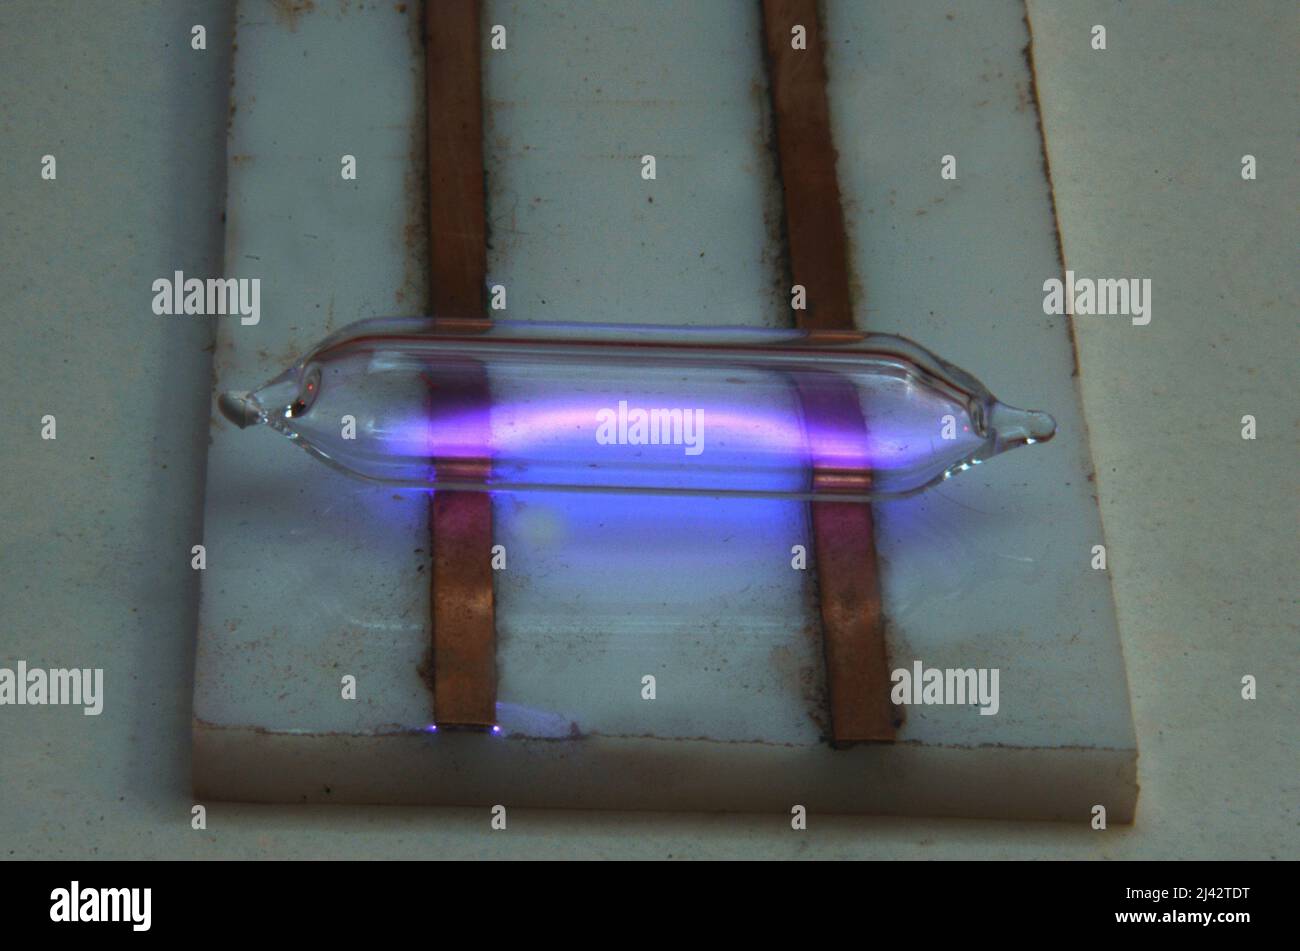 Muestra del elemento N° 9: Flúor en un tubo geissler excitado con alta tensión para que emita luz. Foto de stock